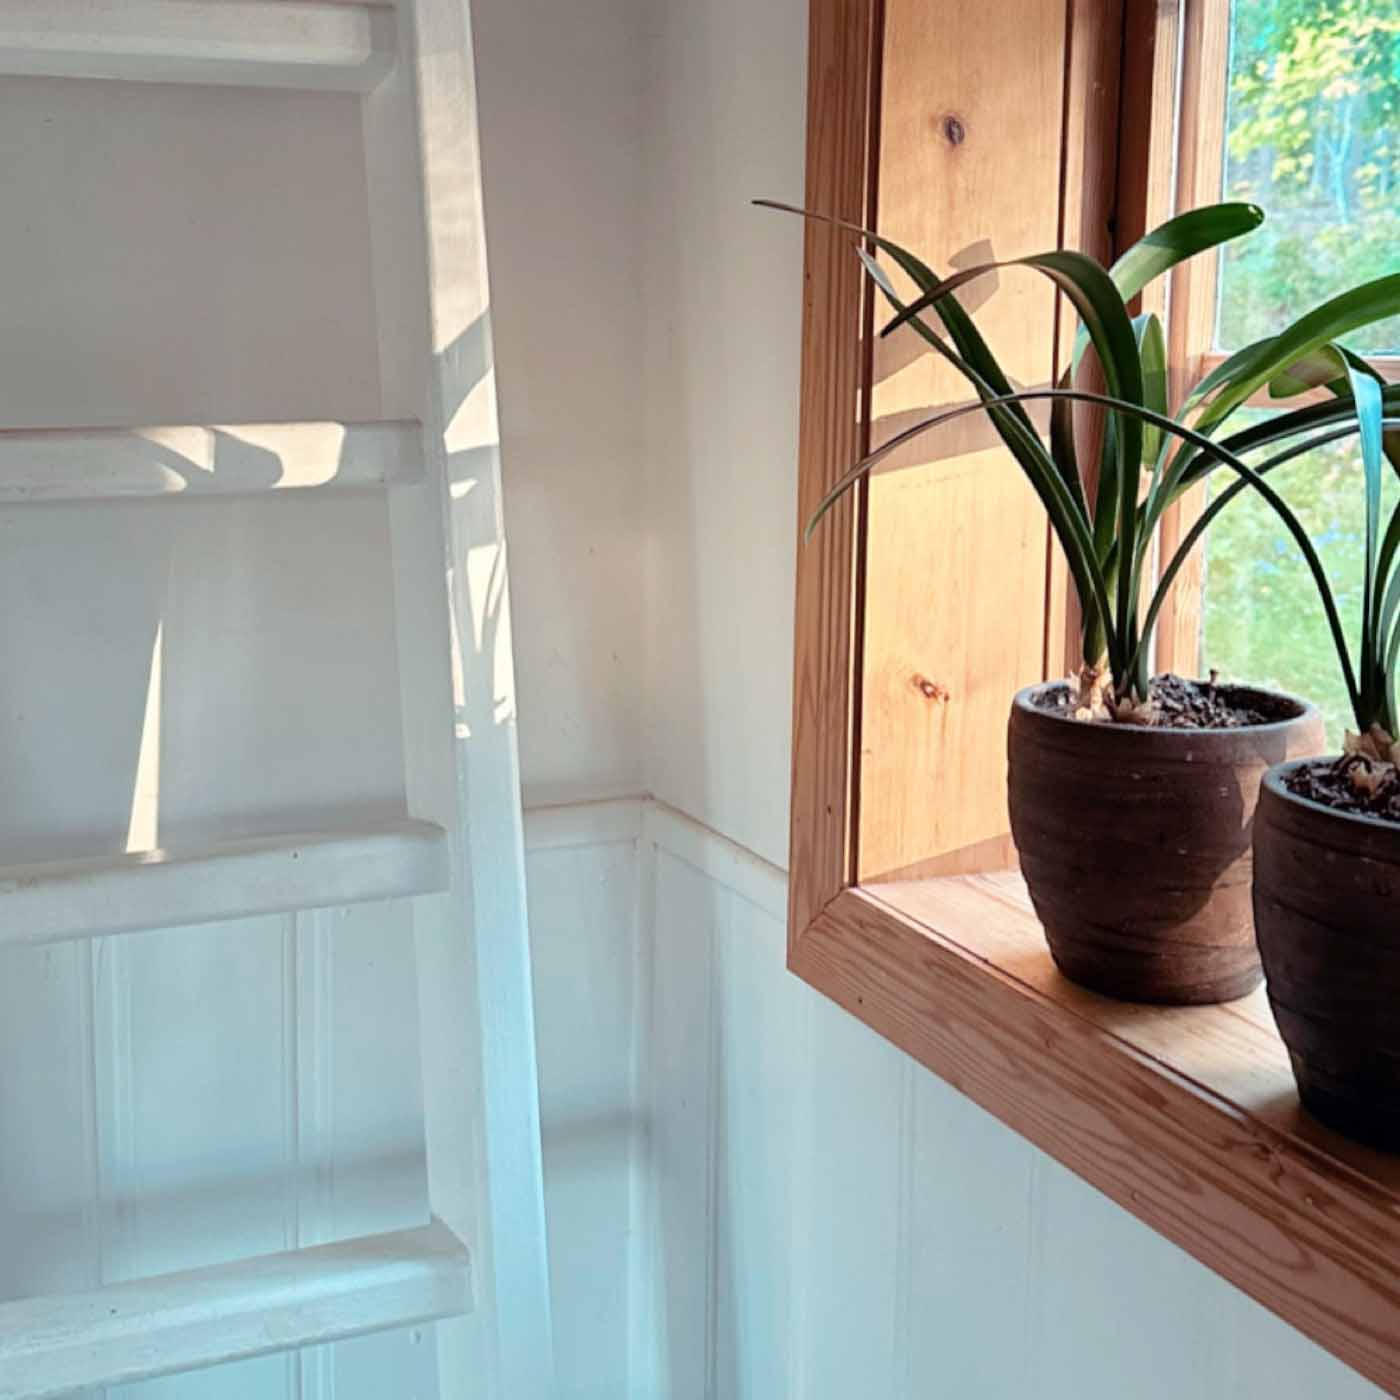 Fönster i solljus med gröna växter i kruka